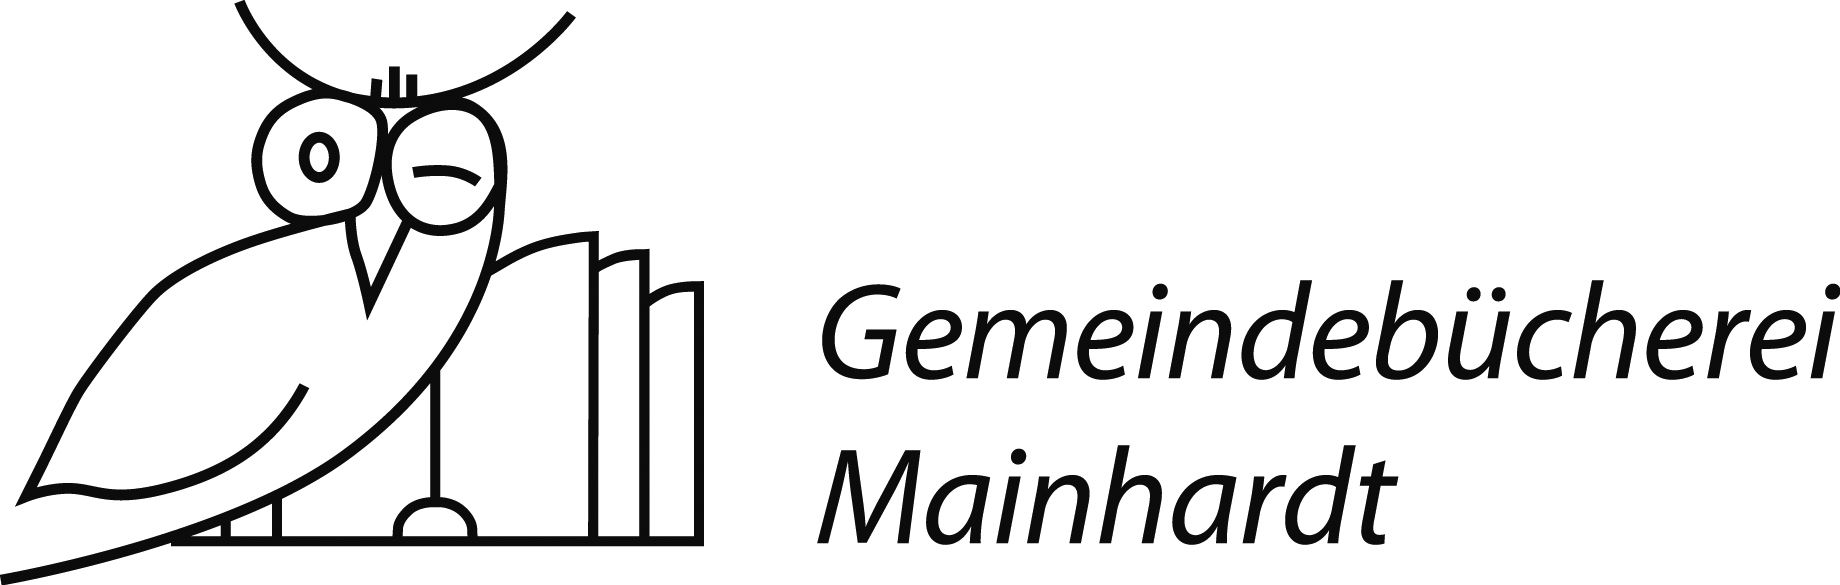  Logo der Gemeindebücherei 